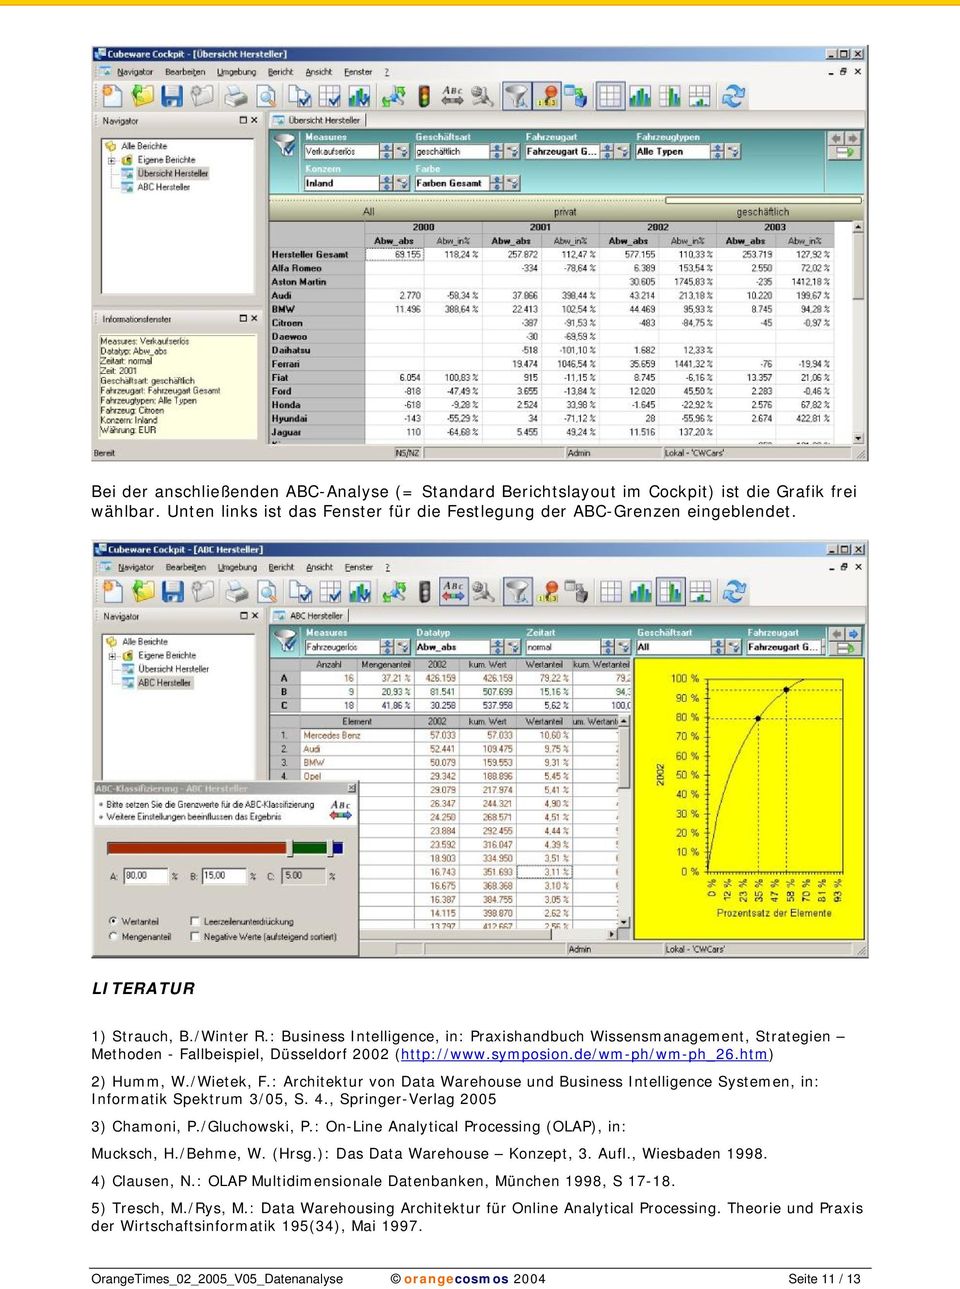 htm) 2) Humm, W./Wietek, F.: Architektur von Data Warehouse und Business Intelligence Systemen, in: Informatik Spektrum 3/05, S. 4., Springer-Verlag 2005 3) Chamoni, P./Gluchowski, P.